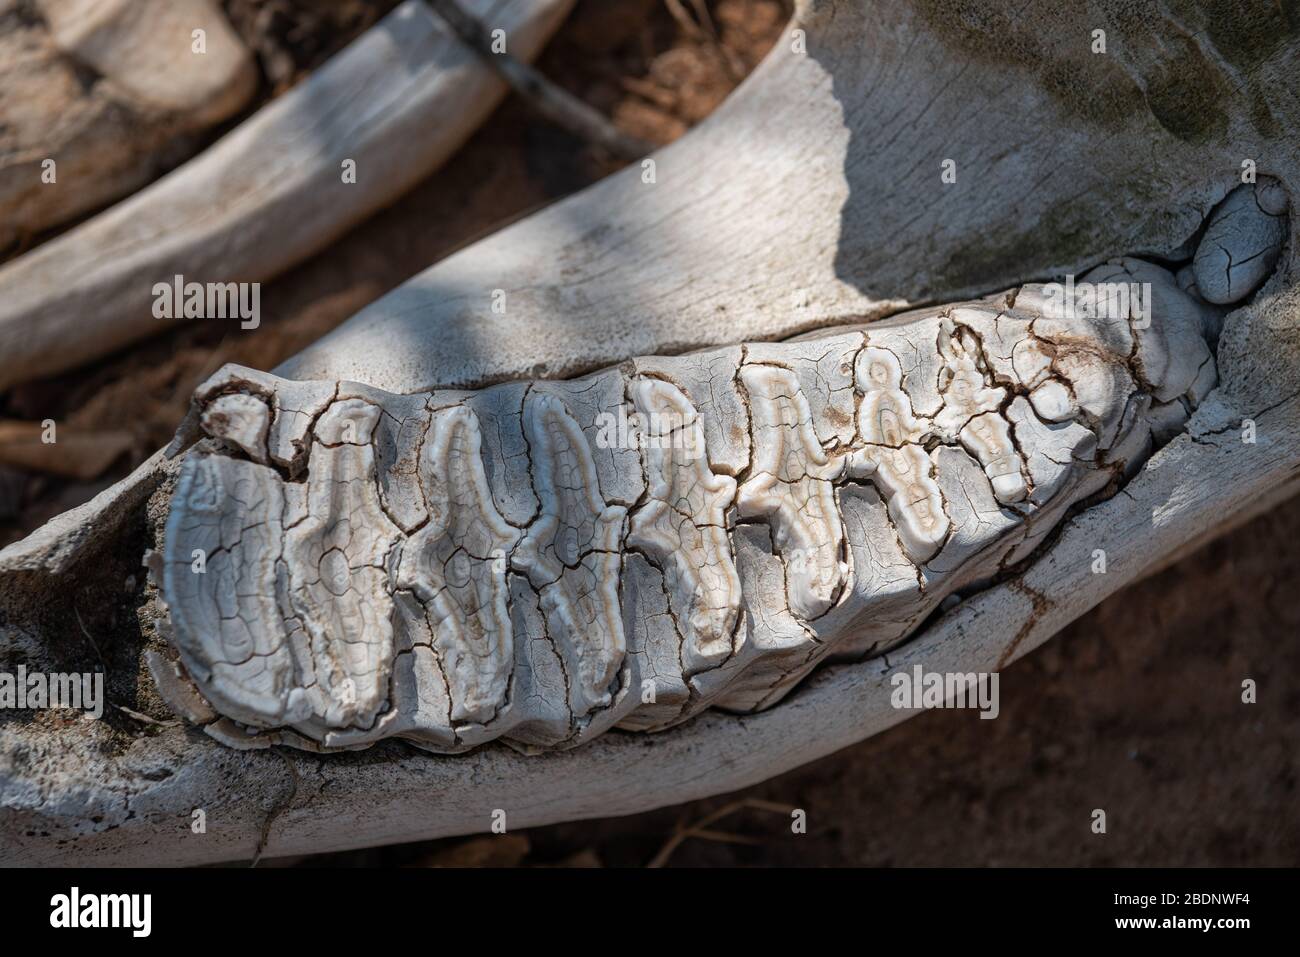 Gros plan sur certaines dents de la mâchoire inférieure d'un crâne d'éléphant Banque D'Images